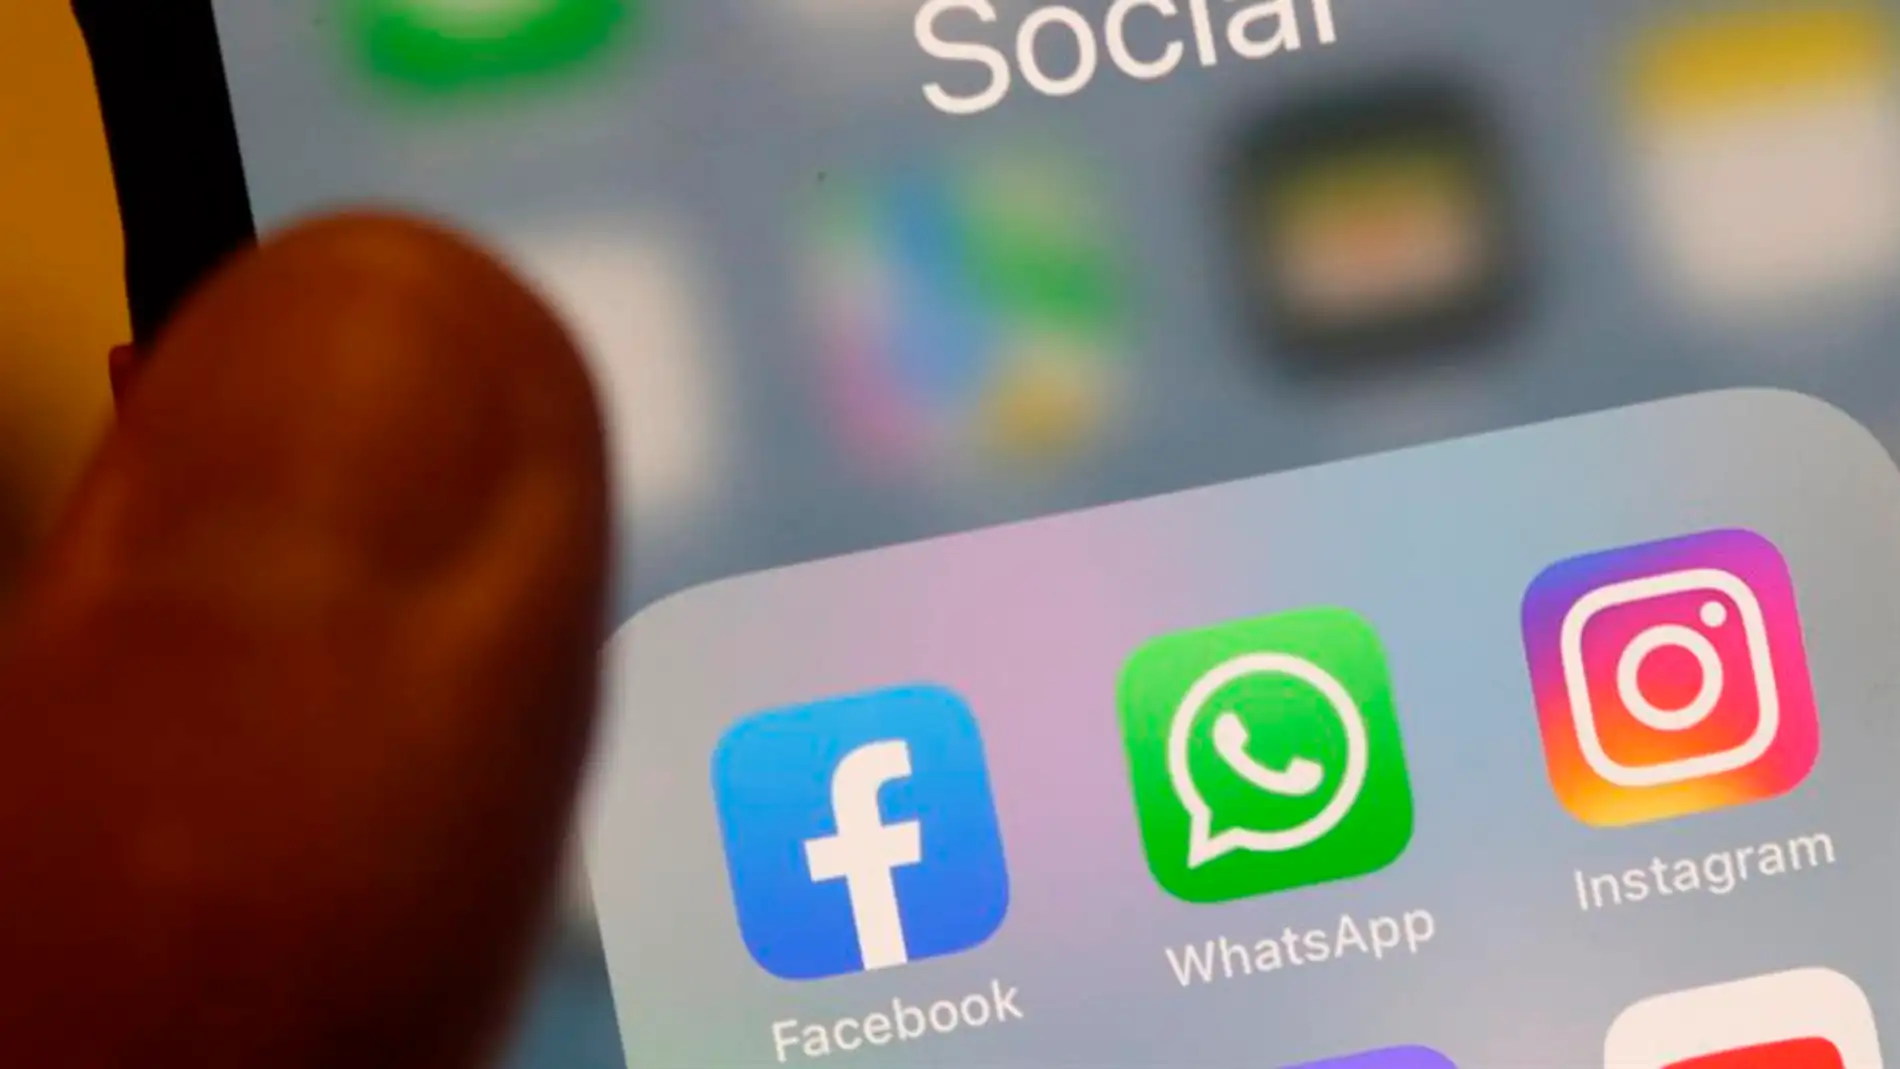 WhatsApp, Instagram y Facebook reanudan su servicio tras seis horas caídos